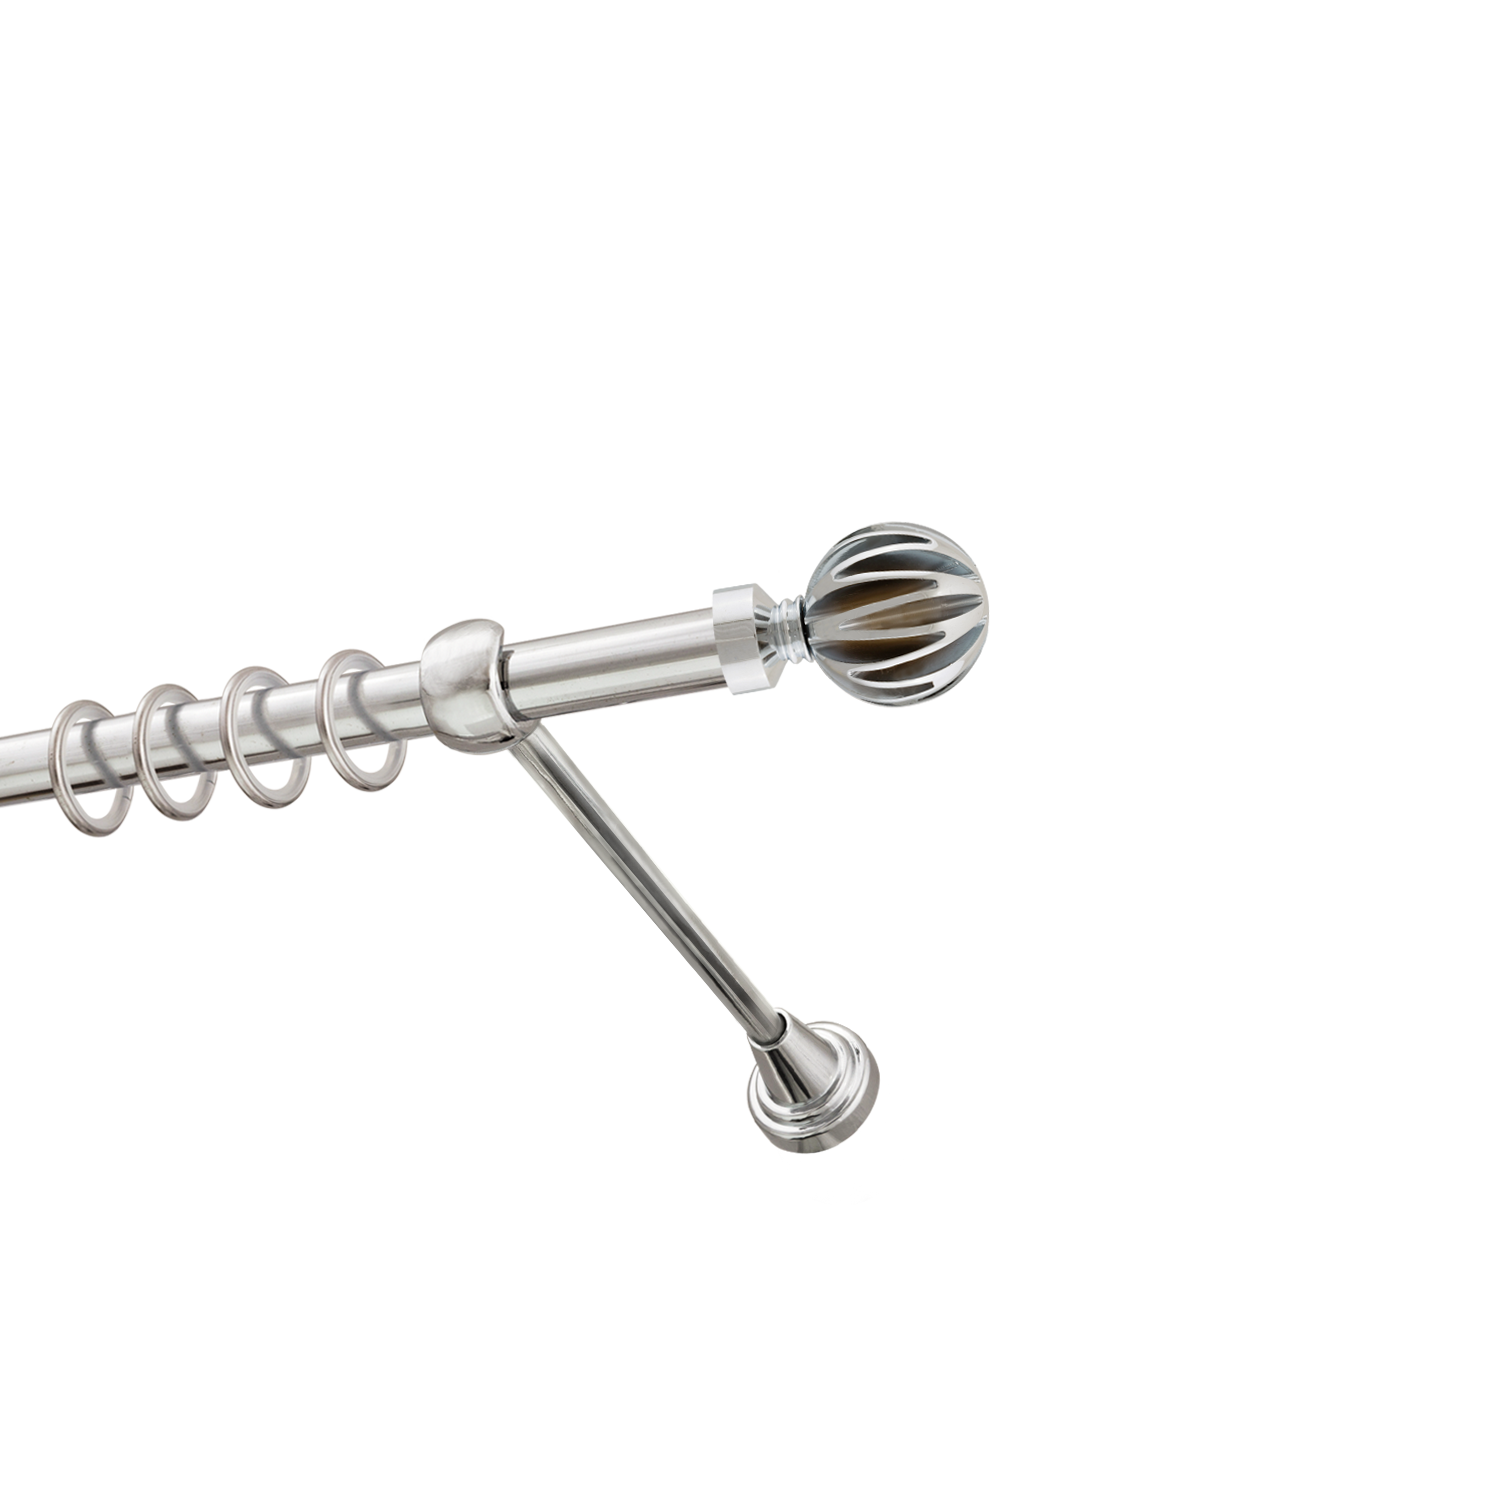 Металлический карниз для штор Шафран, однорядный 16 мм, серебро, гладкая штанга, длина 180 см - фото Wikidecor.ru